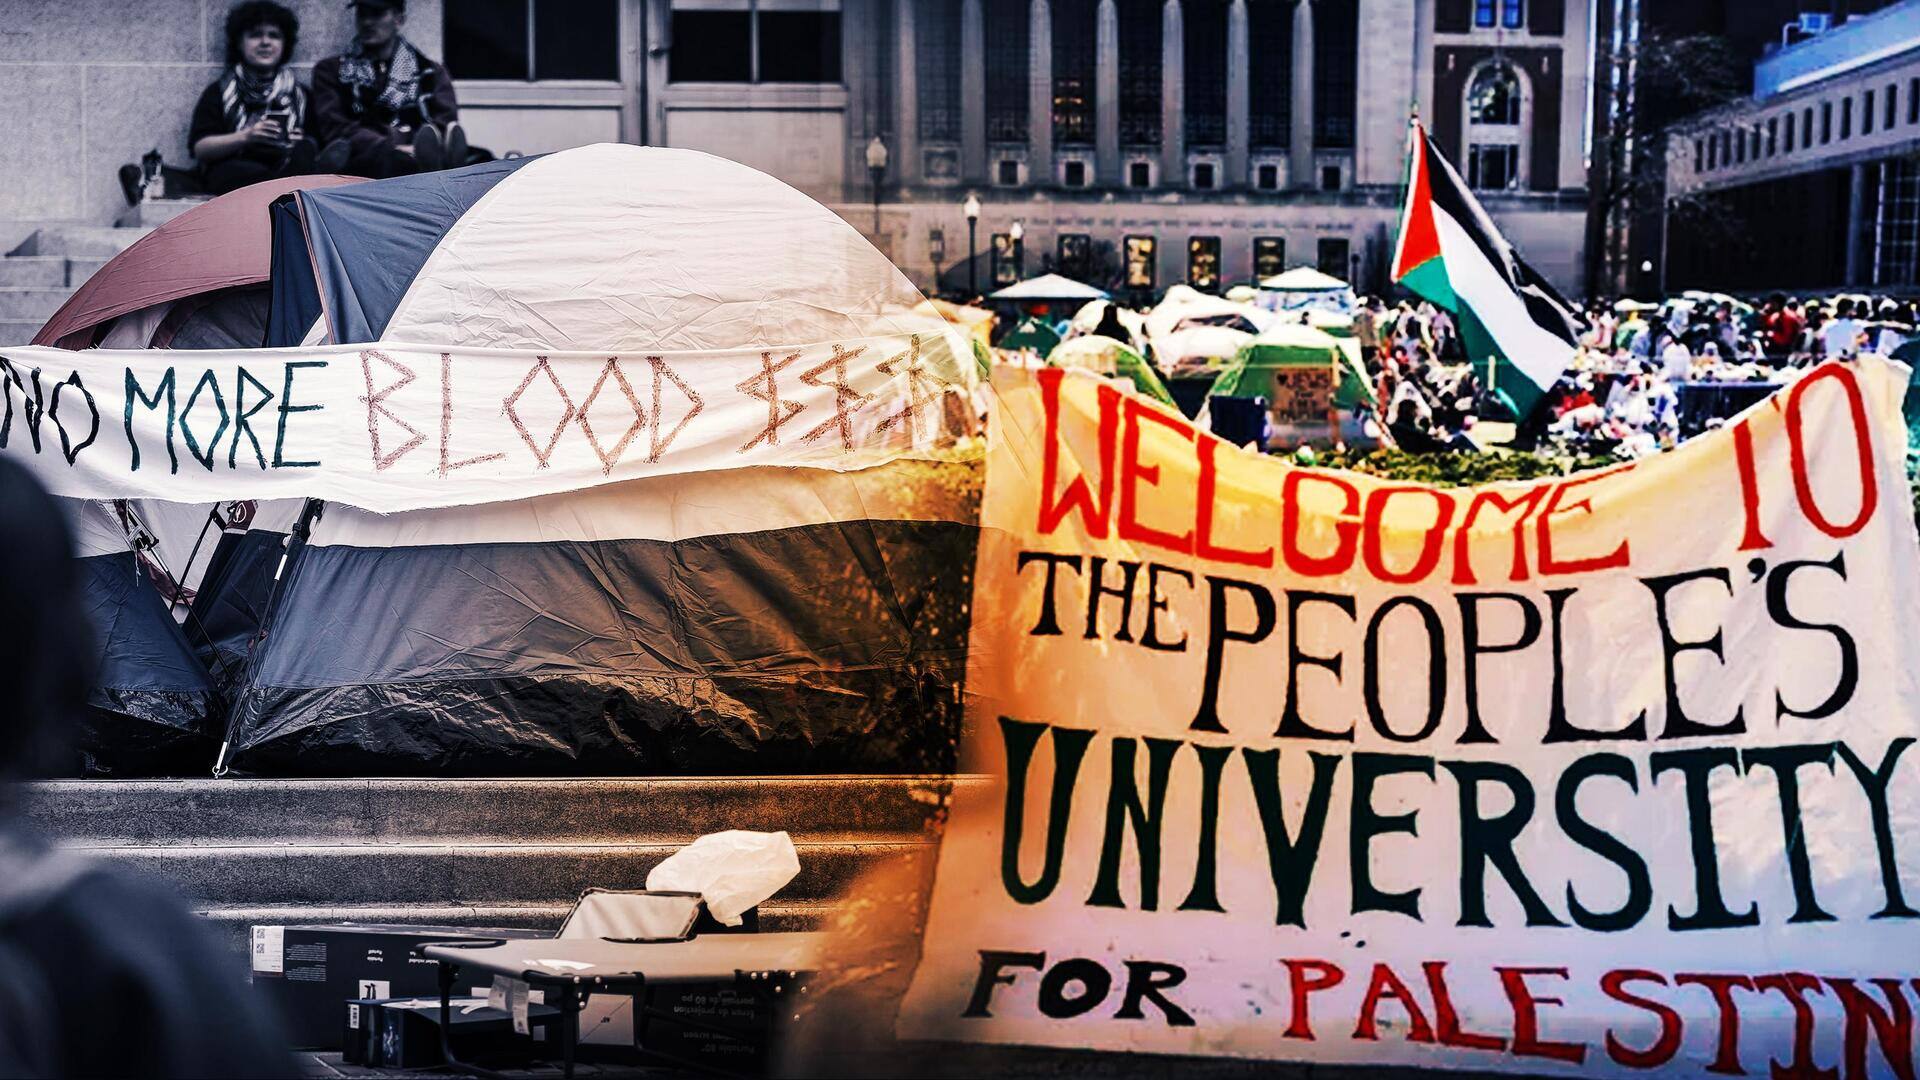 अमेरिका: विश्वविद्यालयों में फिलिस्तीन समर्थक विरोध-प्रदर्शन तेज, हार्वर्ड में फहराया गया फिलिस्तीन का झंडा